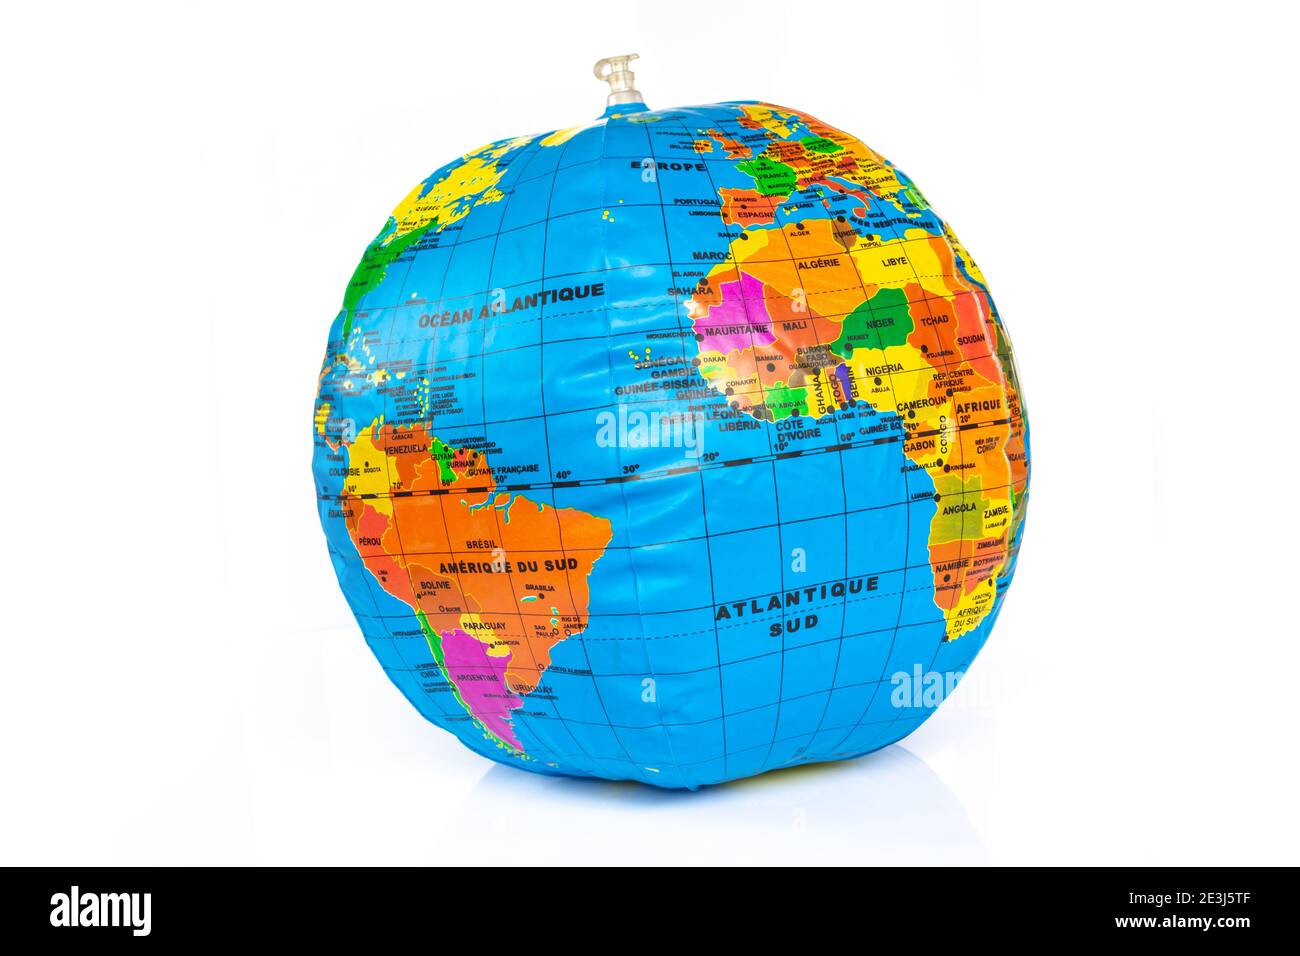 Le ballon de jouet de la Terre de la planète s'est gonflé isolé sur fond blanc. Consommation durable des ressources et concept d'économie Banque D'Images